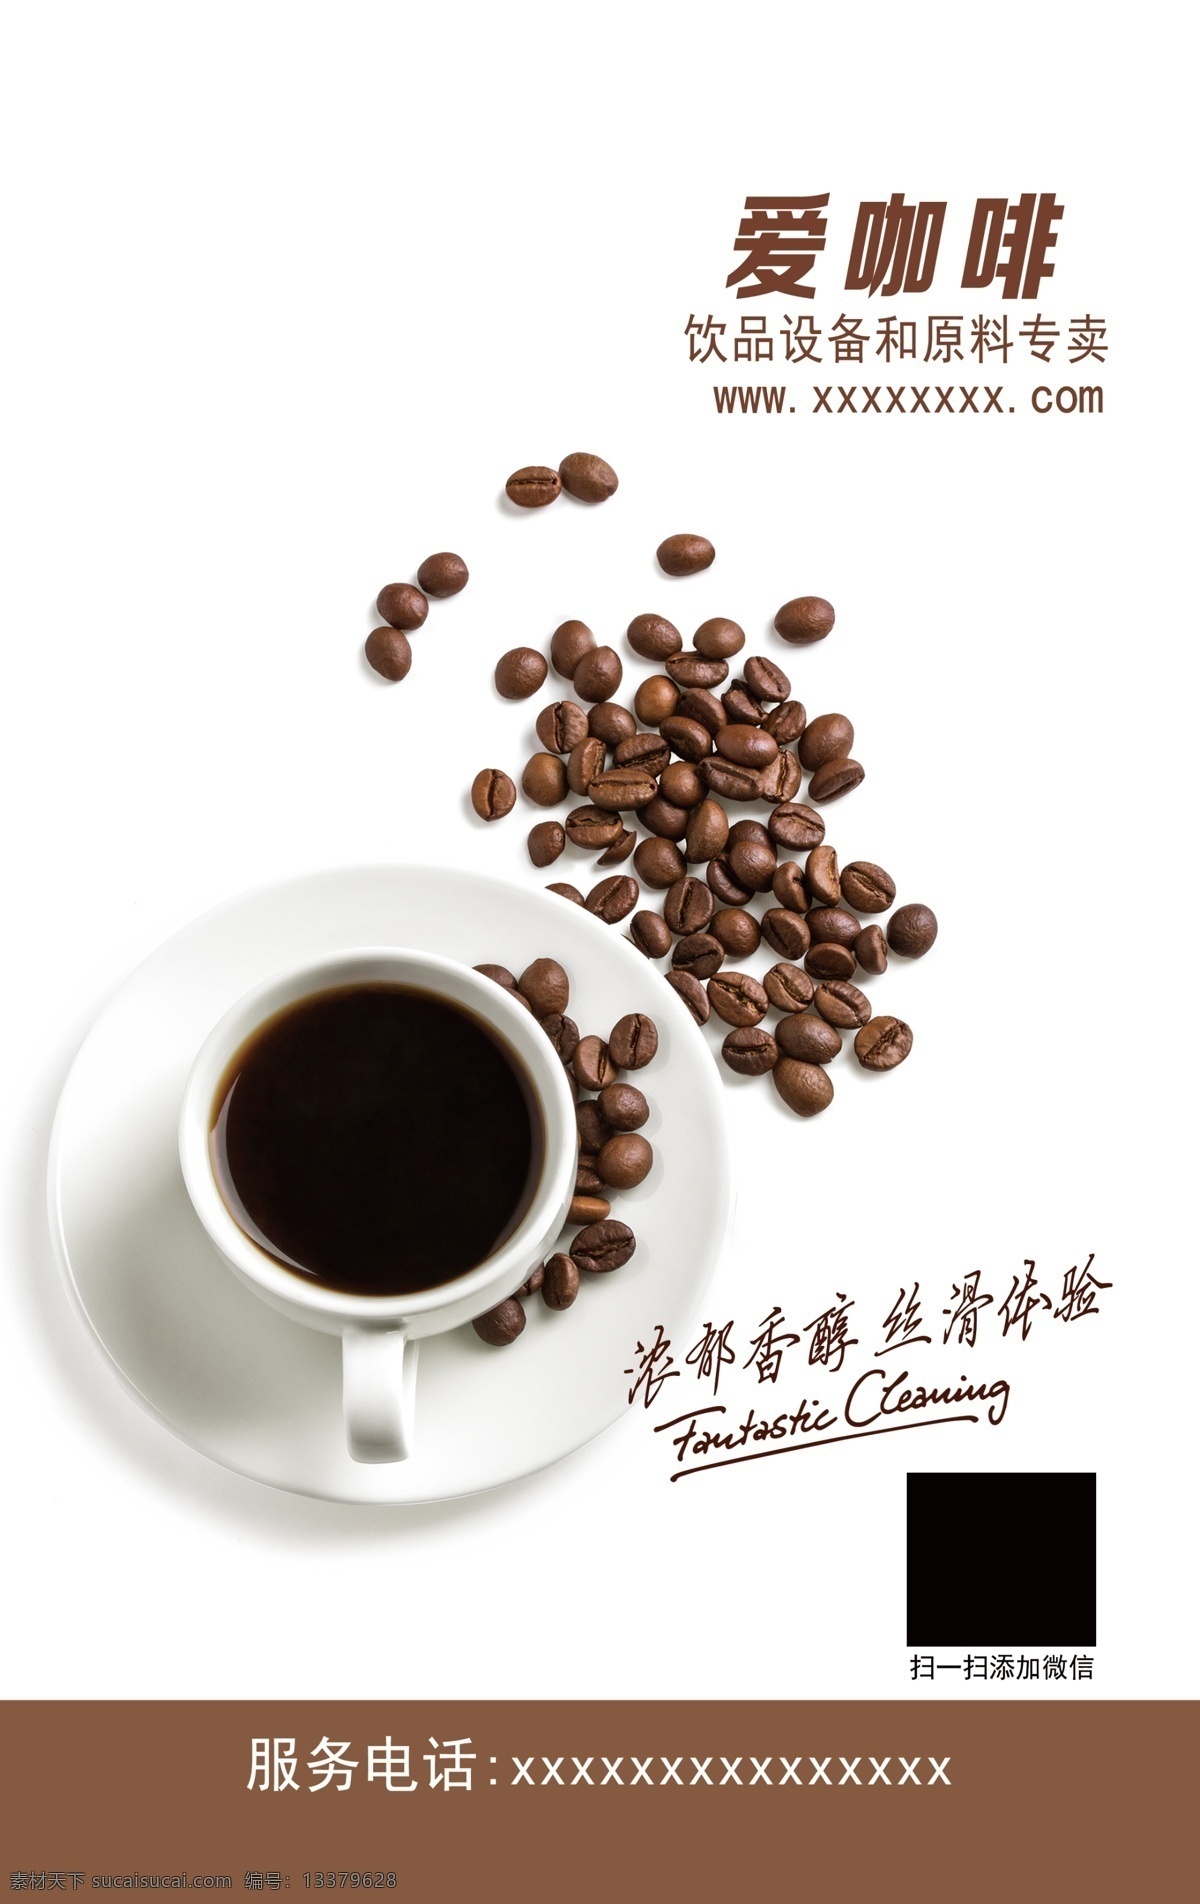 咖啡展板素材 爱咖啡 咖啡展板 咖啡灯片 浓郁香醇 丝滑体验 咖啡海报 咖啡杯